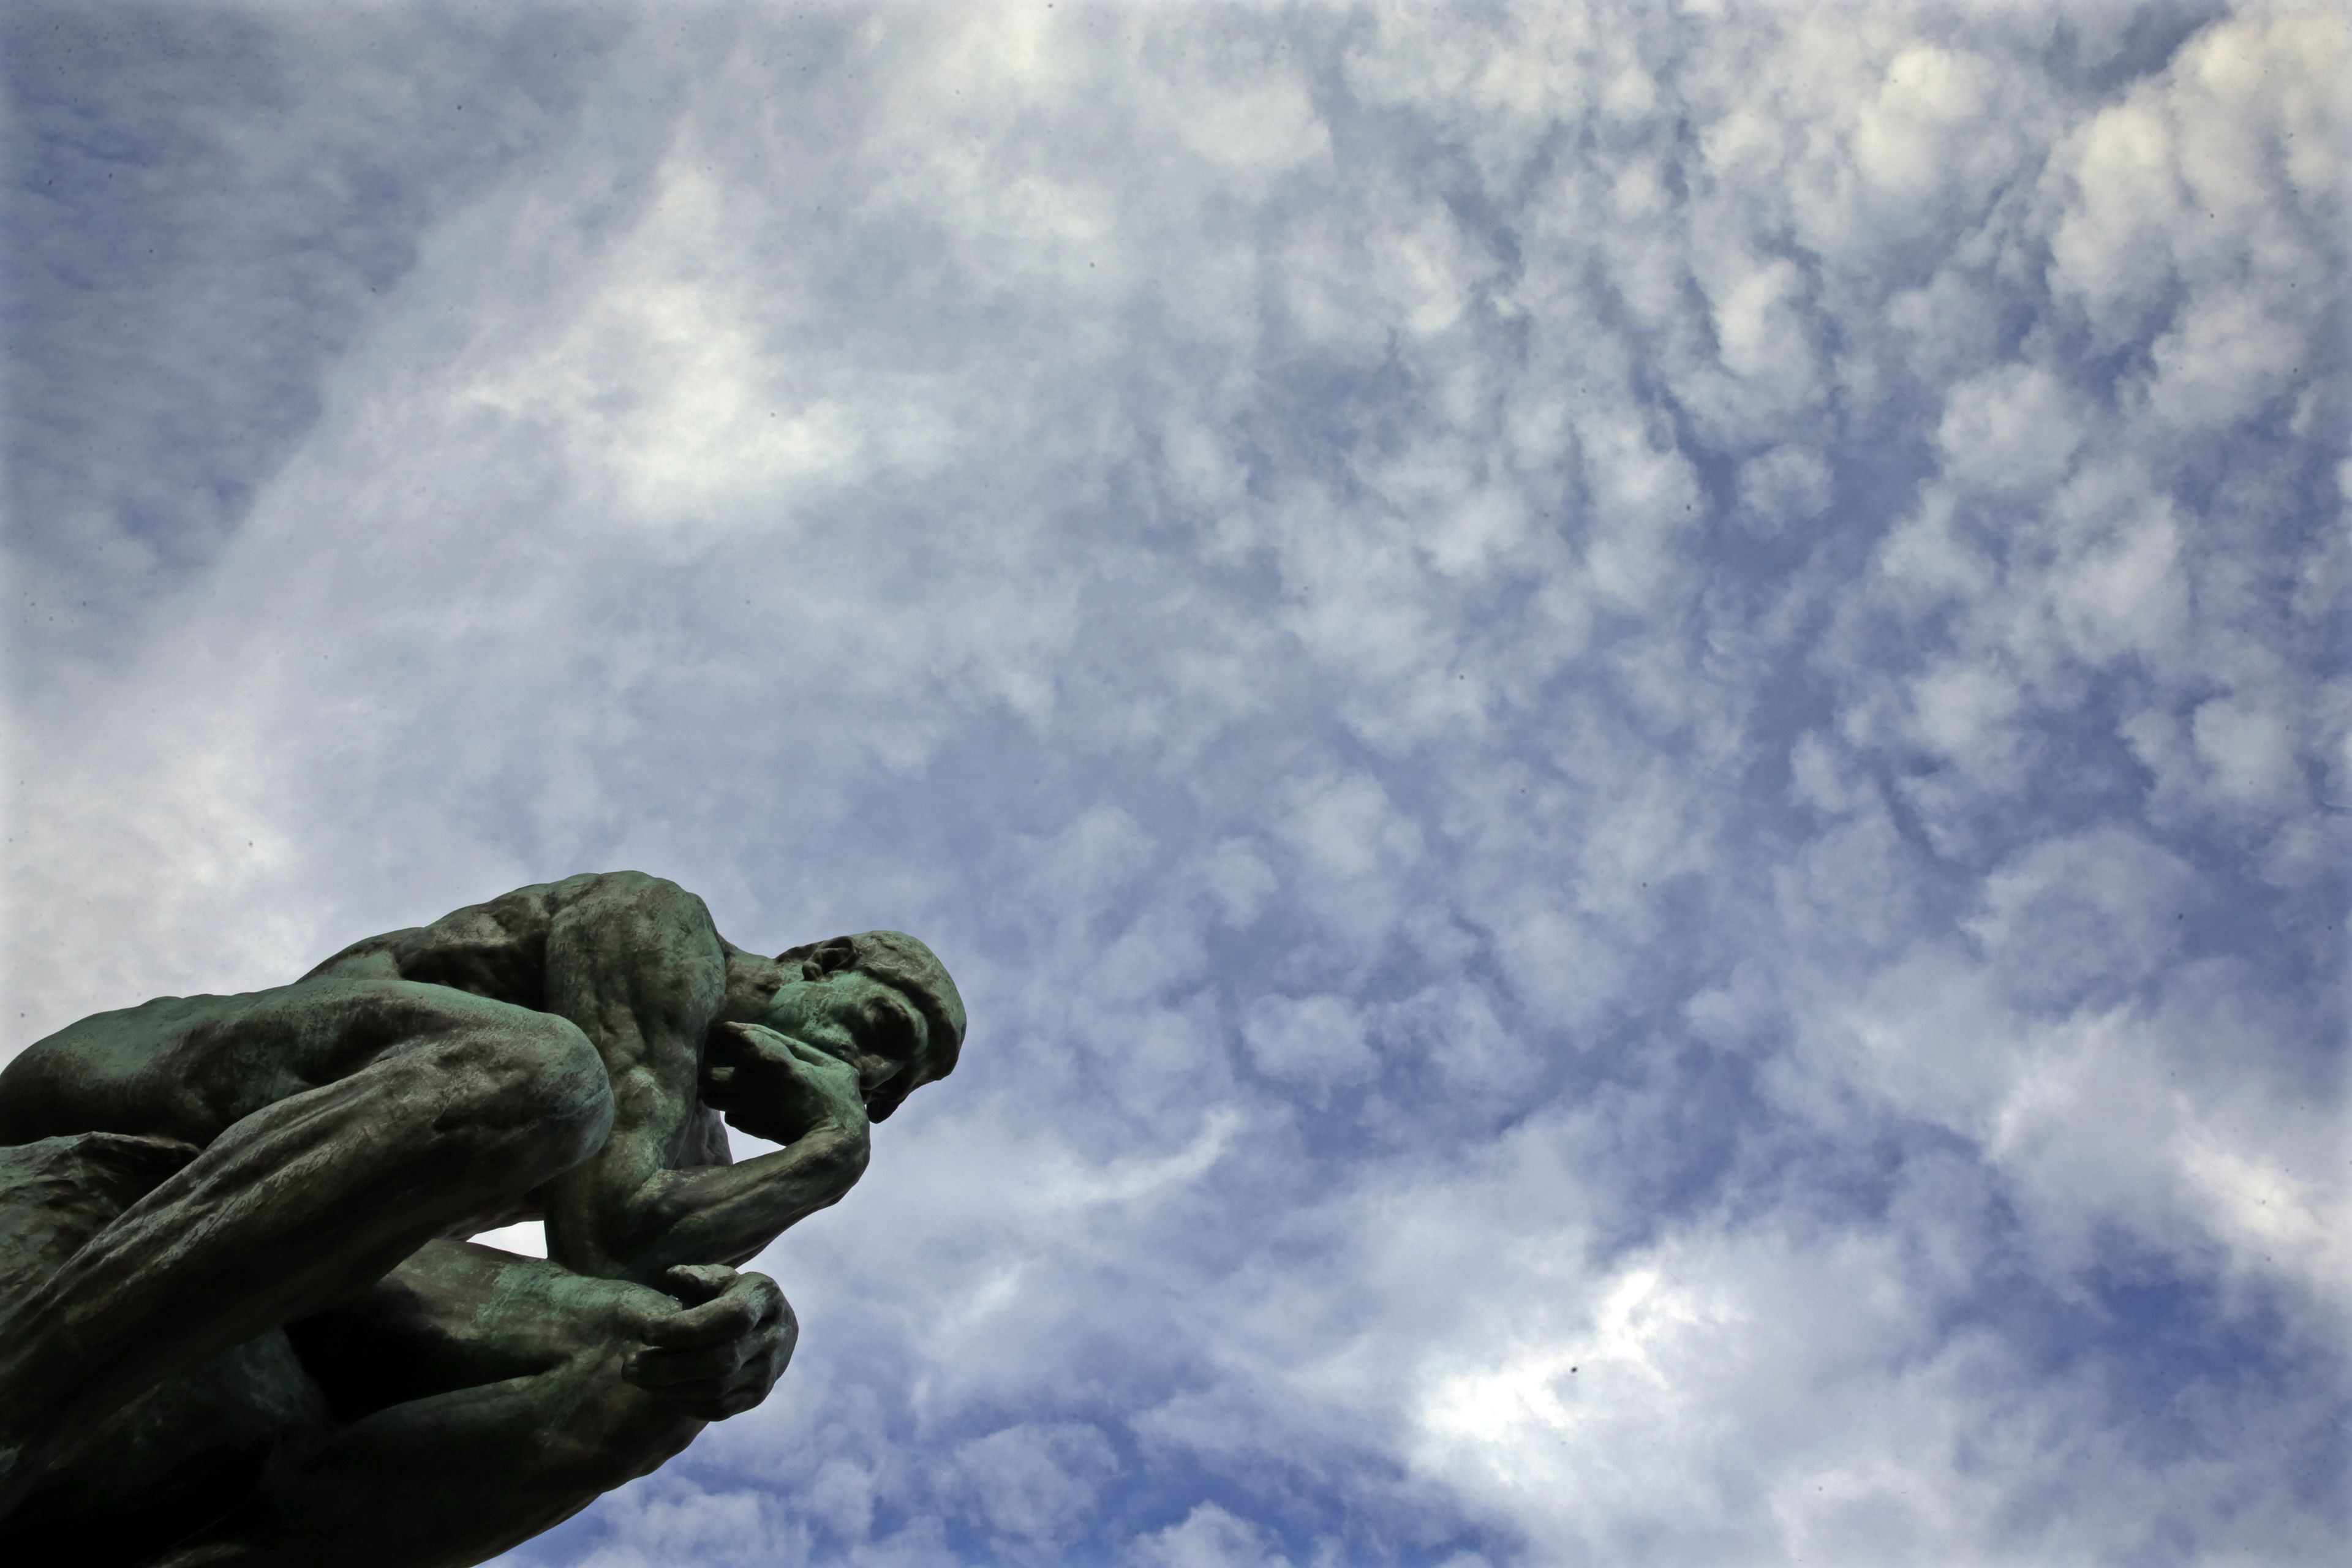 El pensador, de Rodin